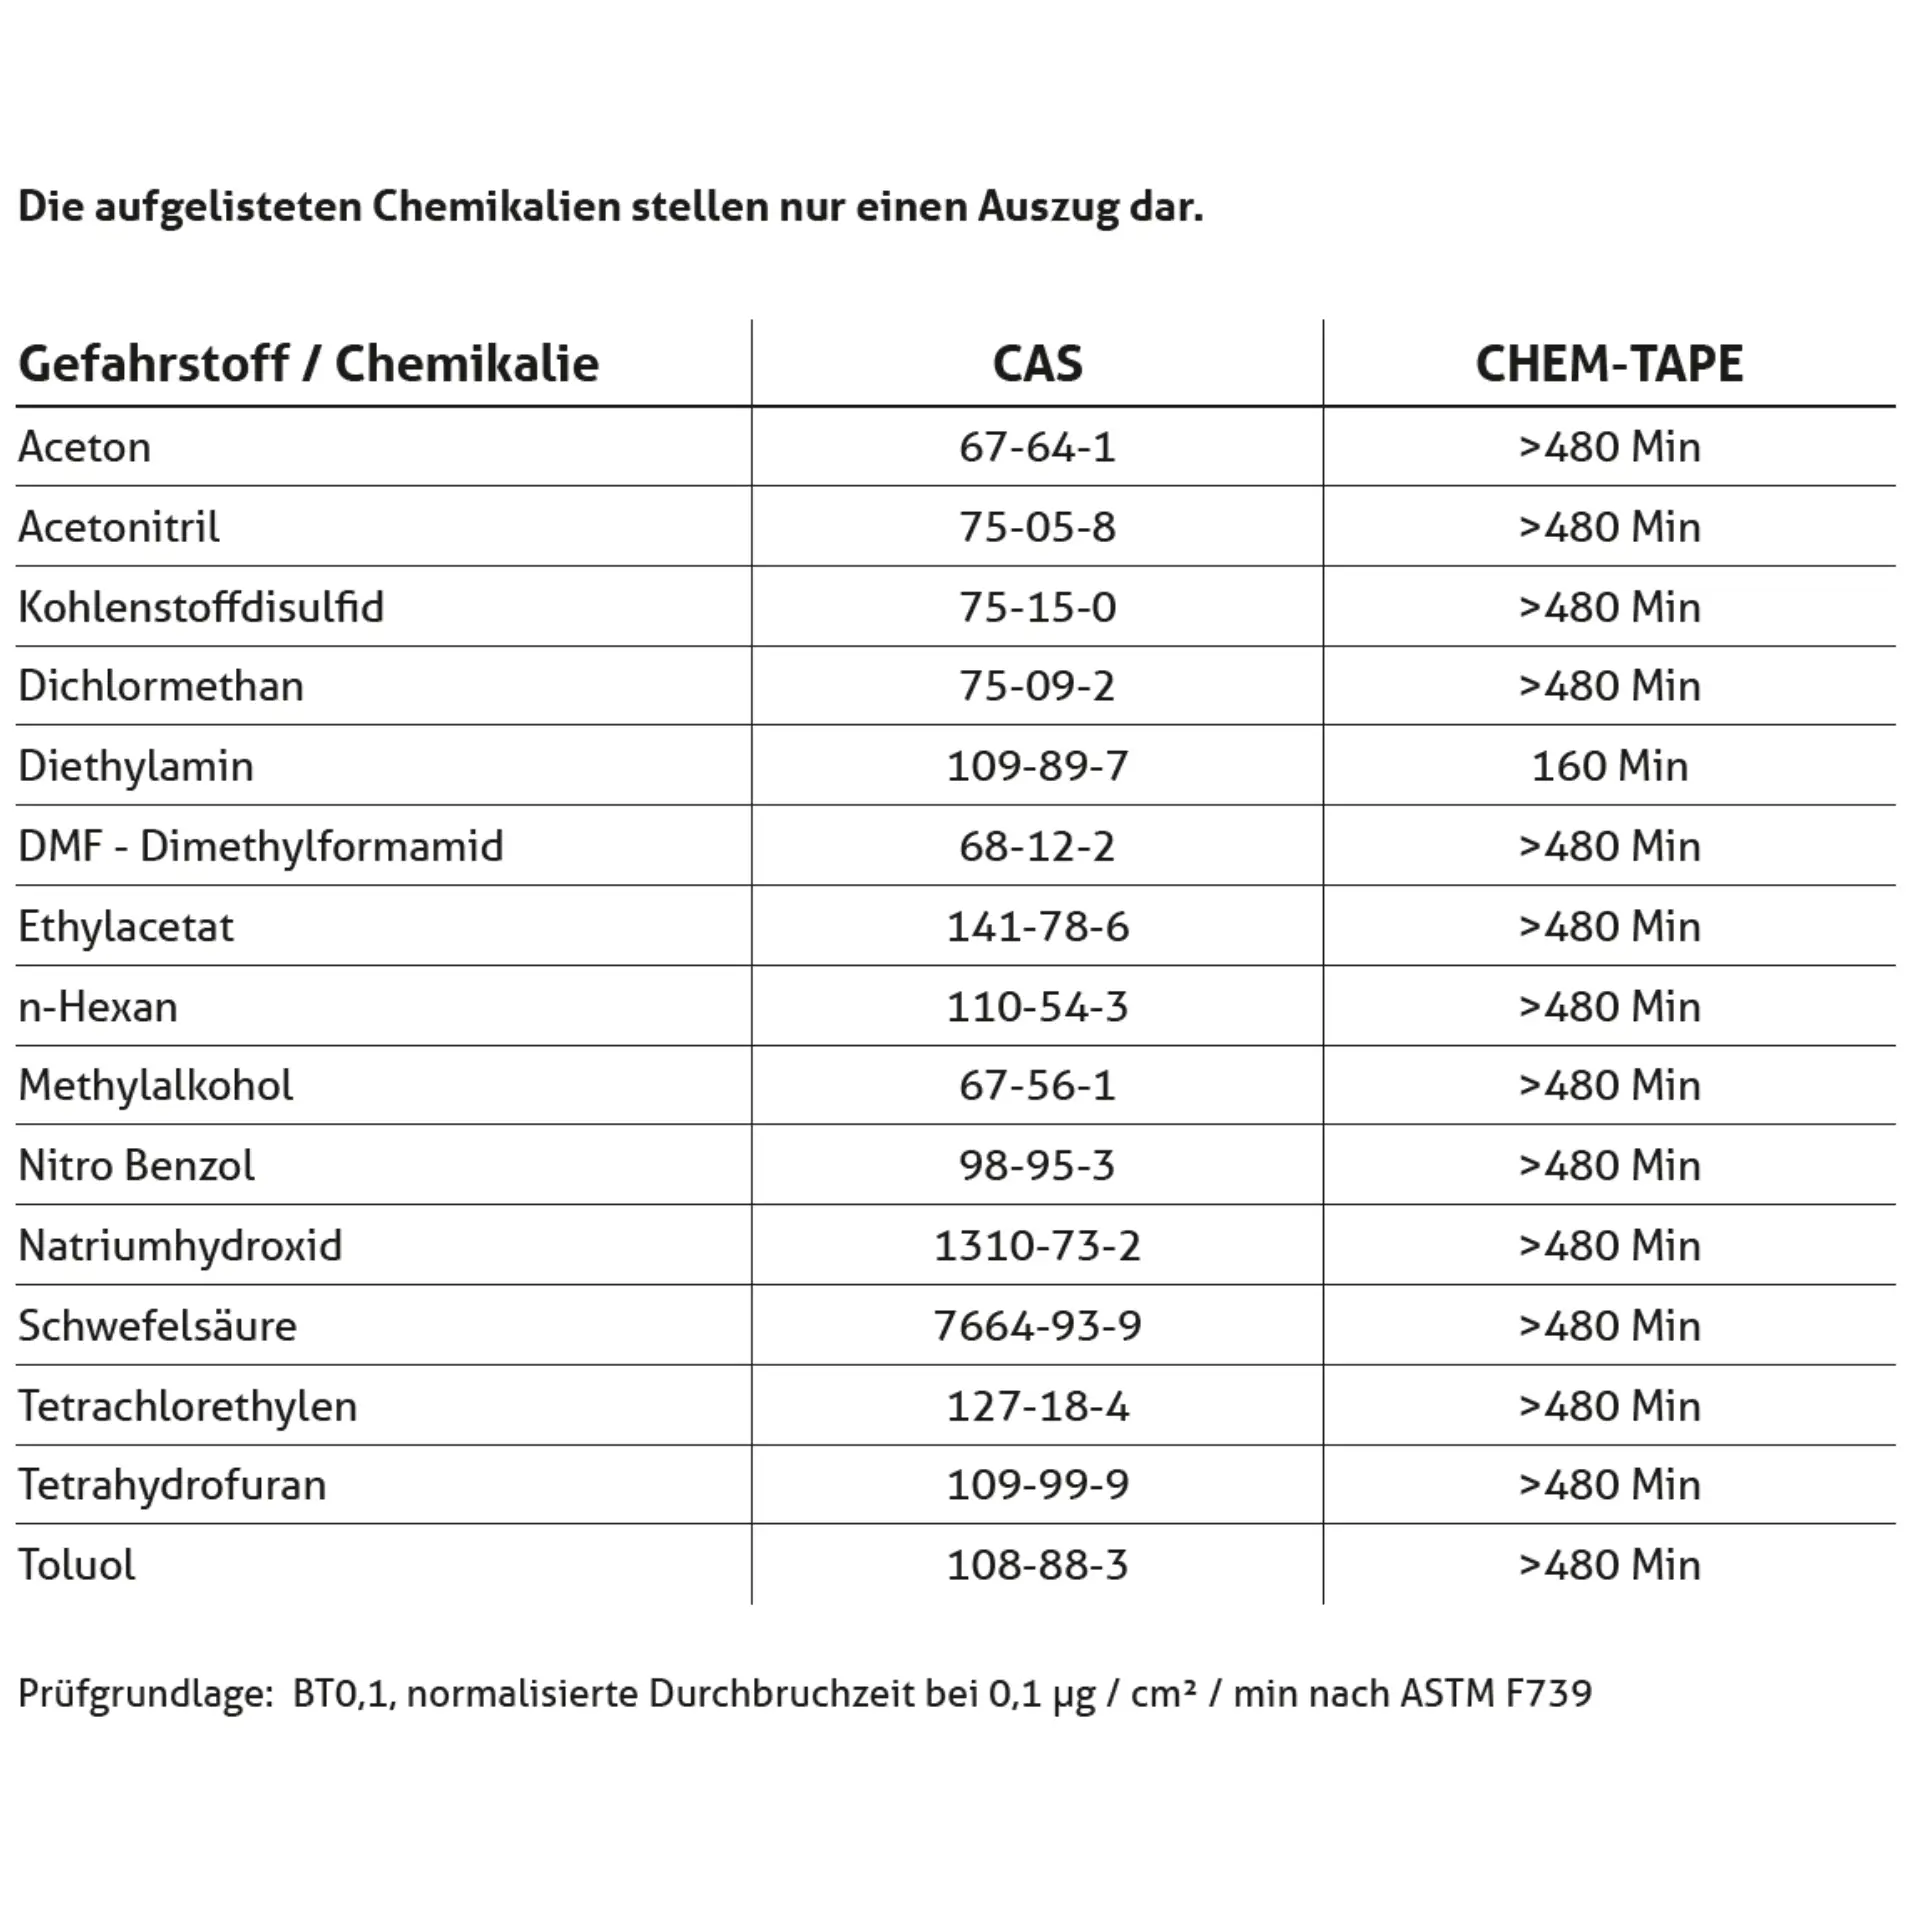 Imagem do produto Chem-Tape® Fita adesiva resistente a químicos